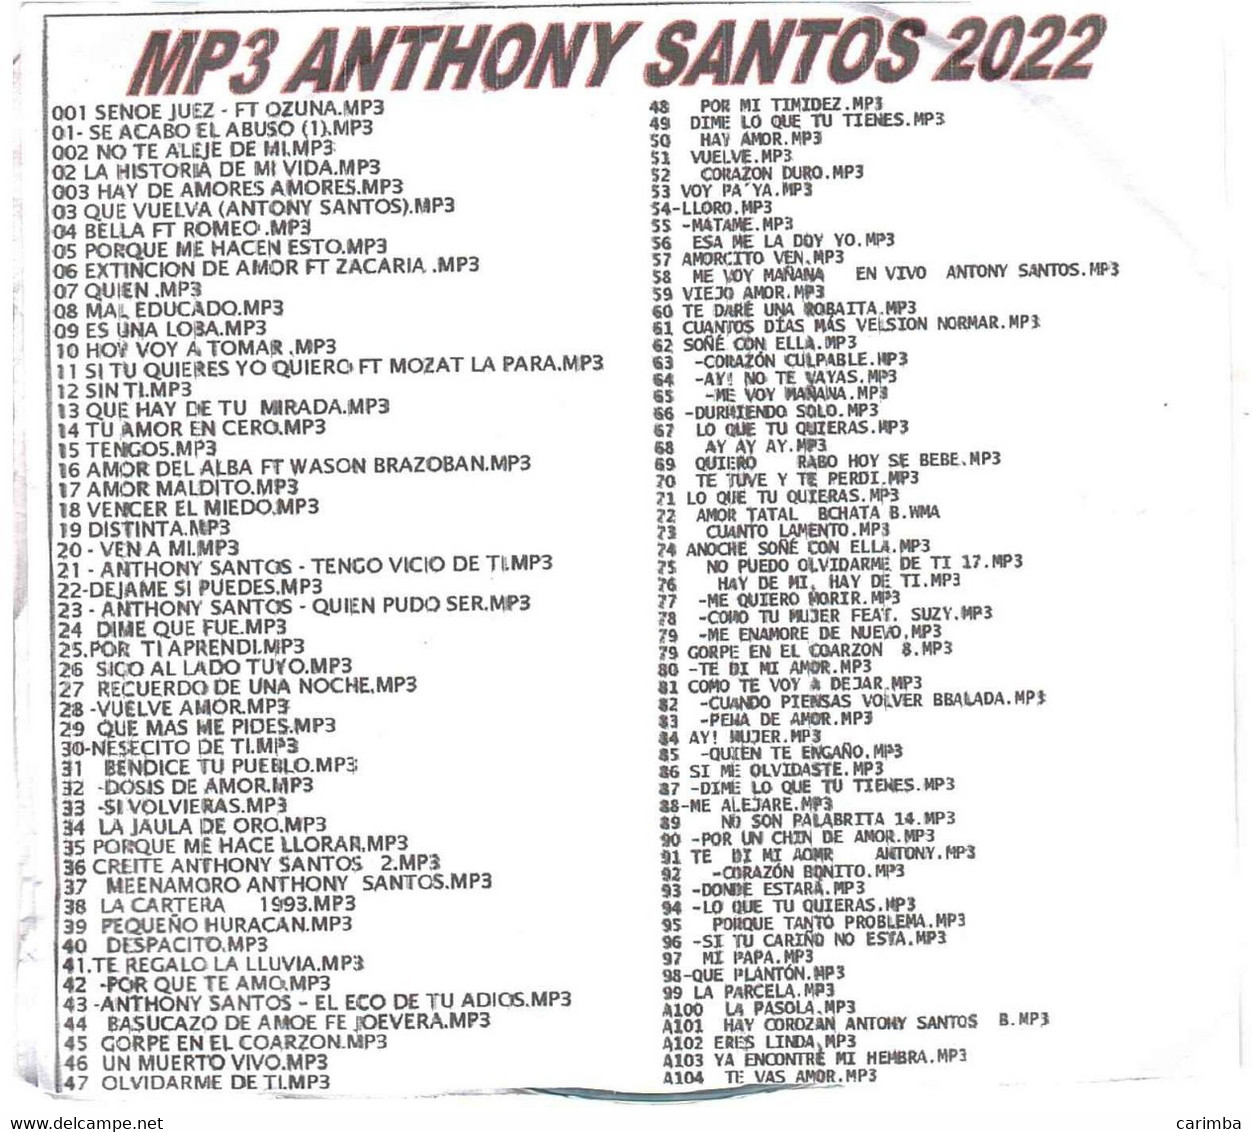 2022 ANTHONY SANTOS AMORES MP3 - Sonstige - Spanische Musik